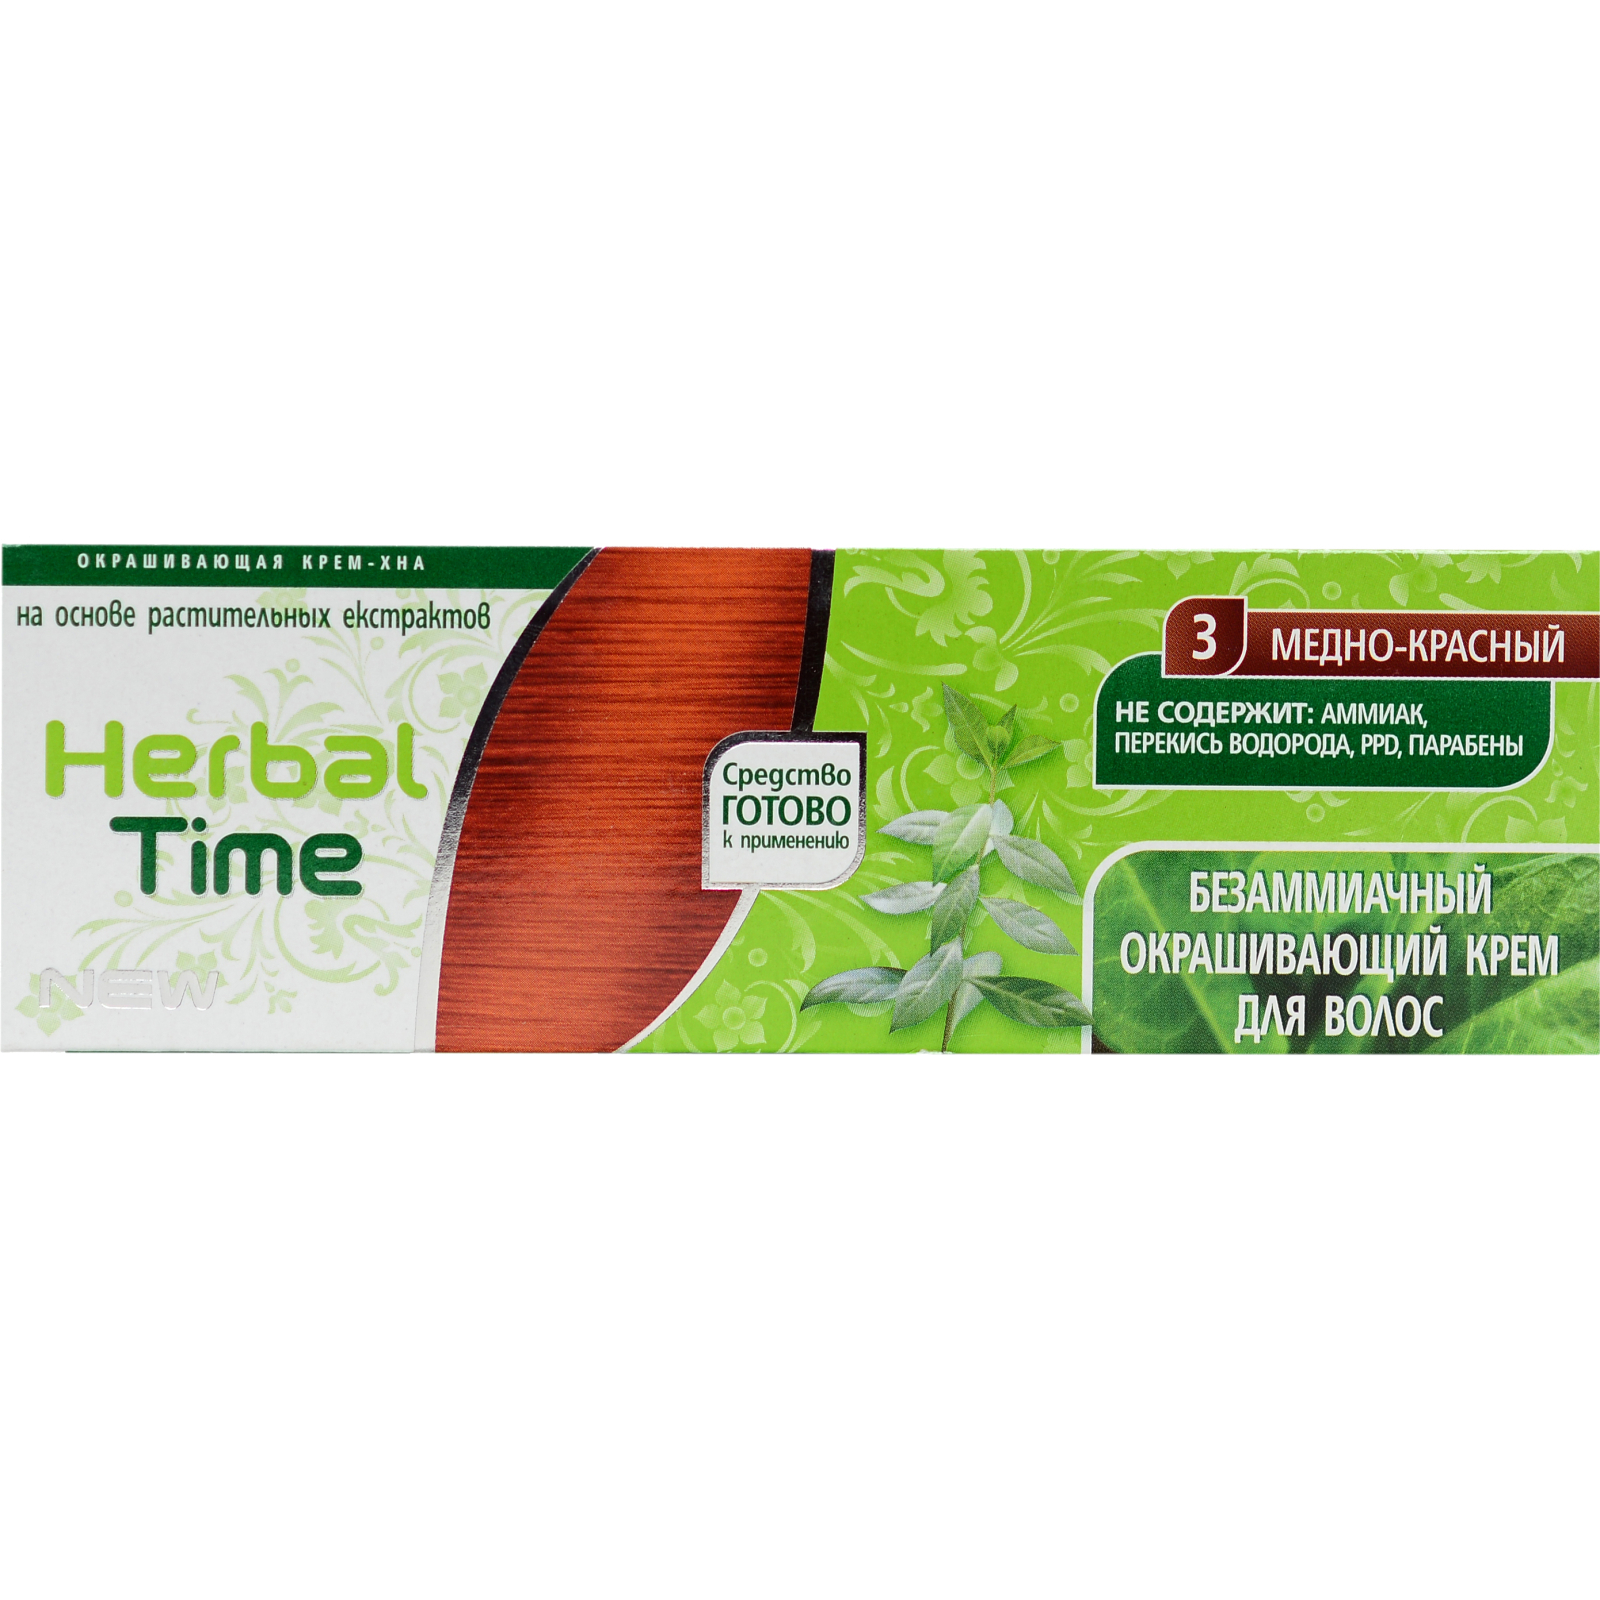 Хна Herbal Time 3 - Медно-красный 75 мл (3800010501064)